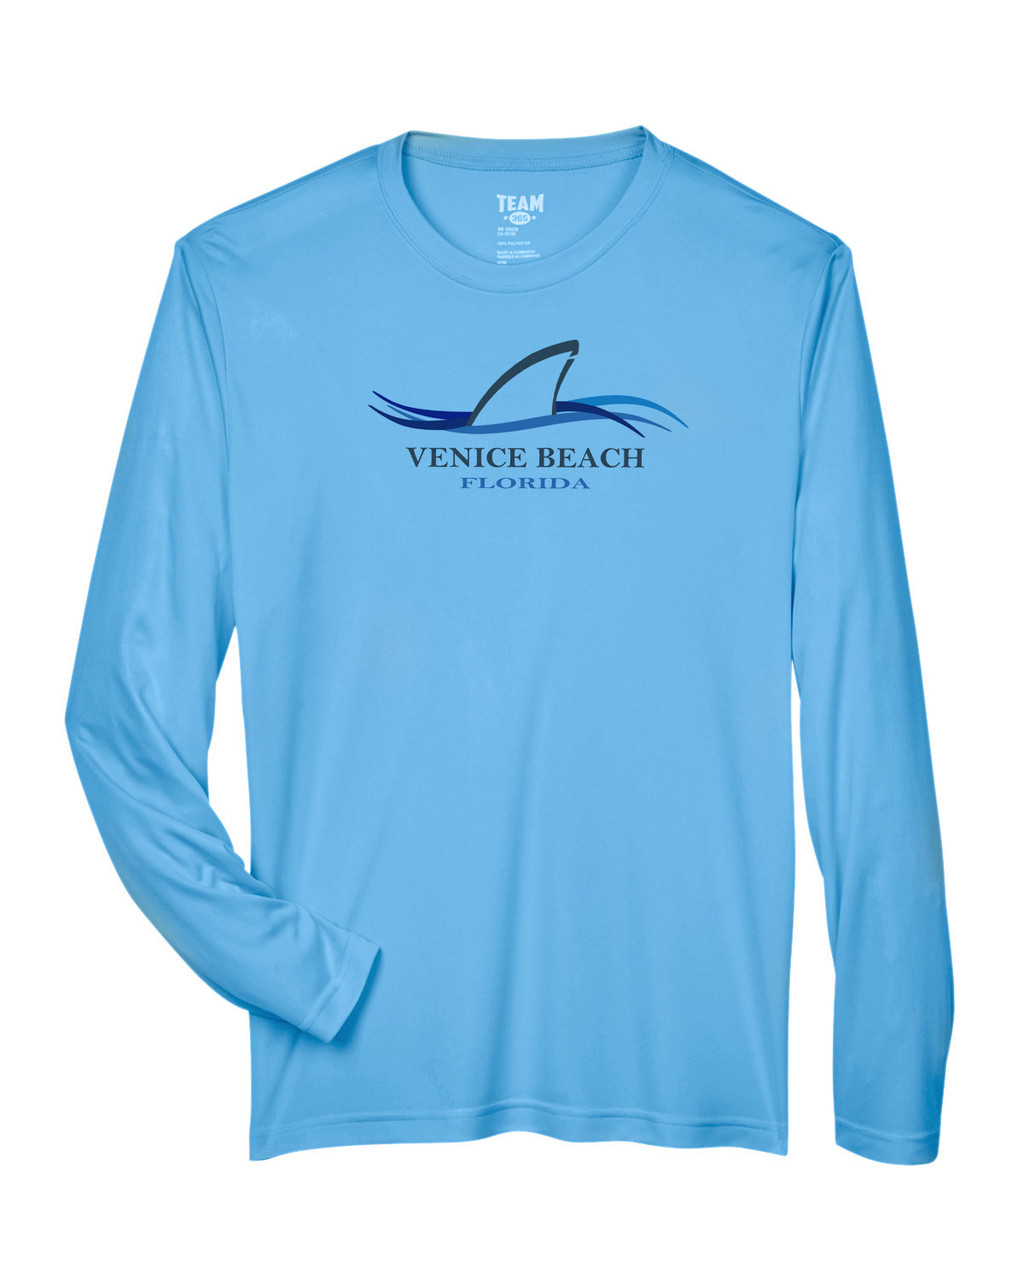 Captain's Landing | Venice Beach Shark Fin Long Sleeve Sun Protection Shirt - Ocean Blue LRG